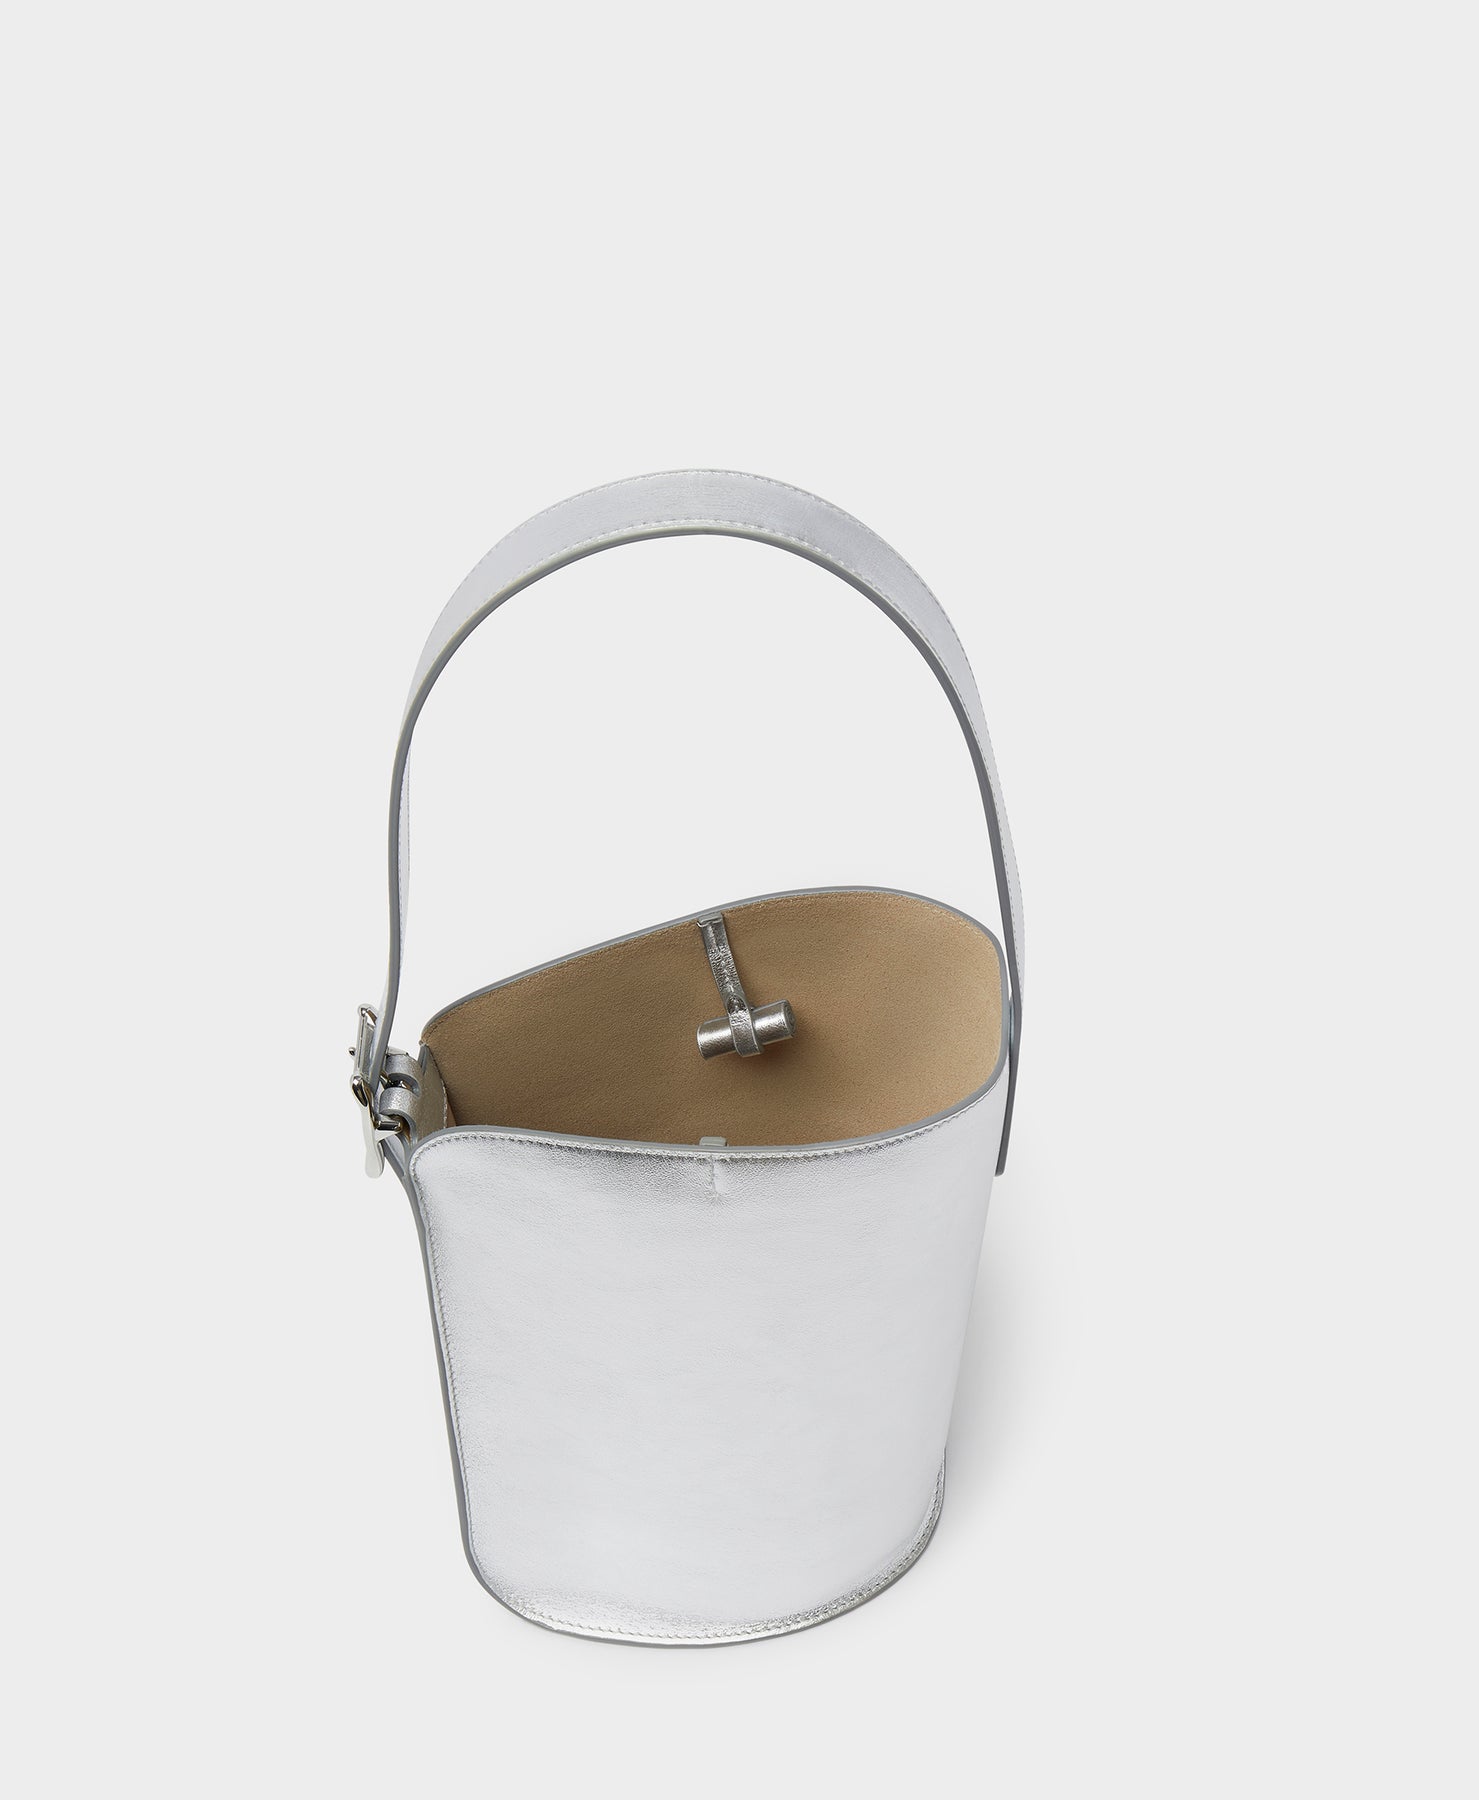 Designer Toffee Mini Quiver Bucket